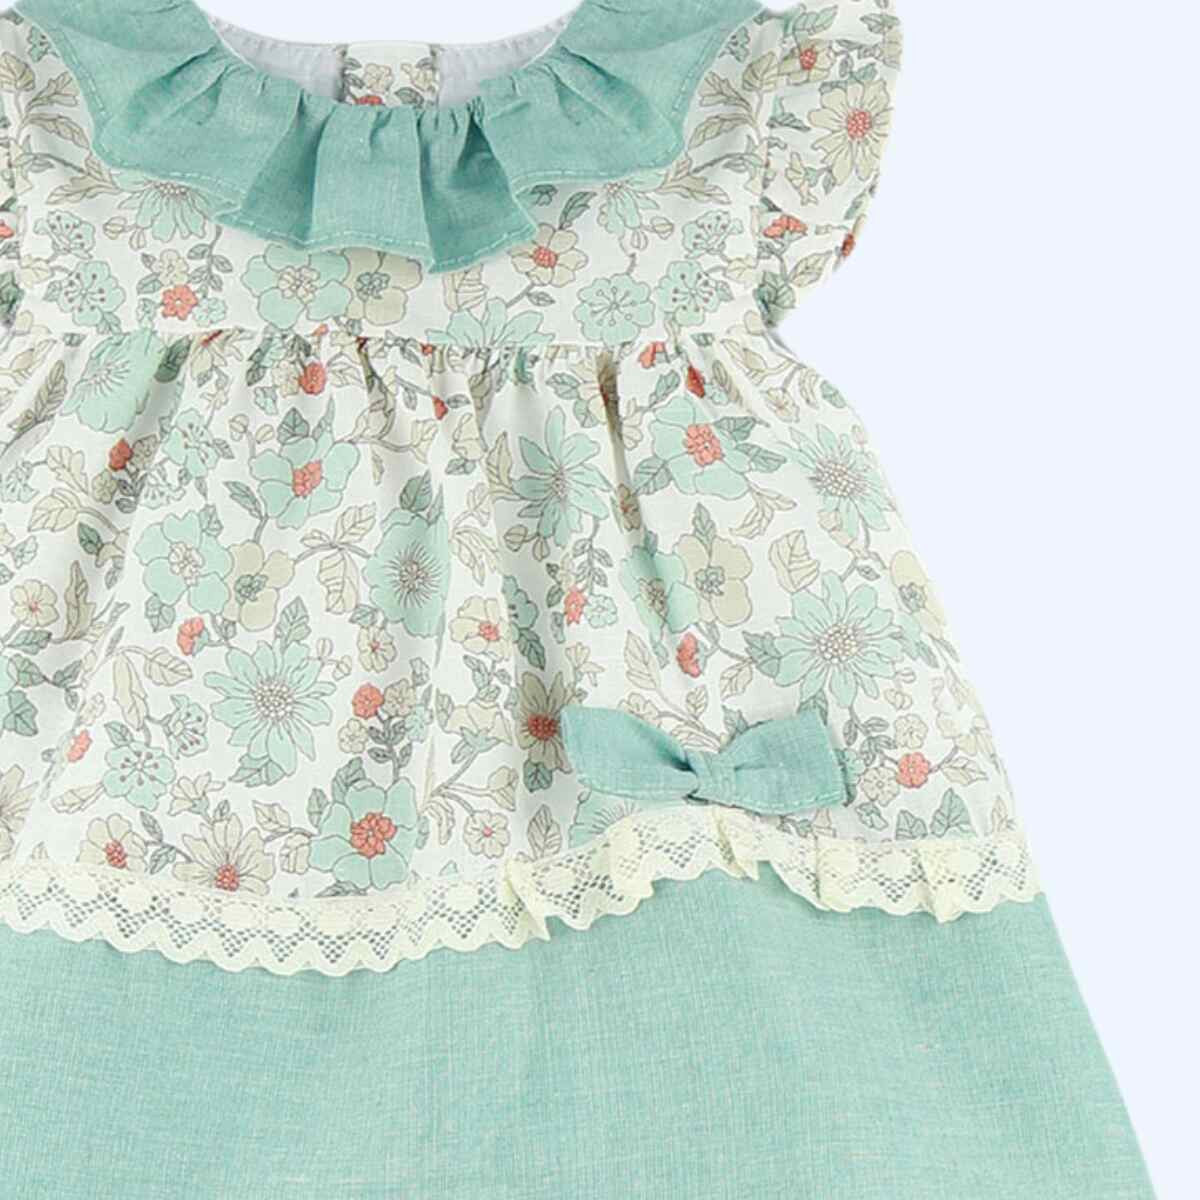 Teal floral dress set